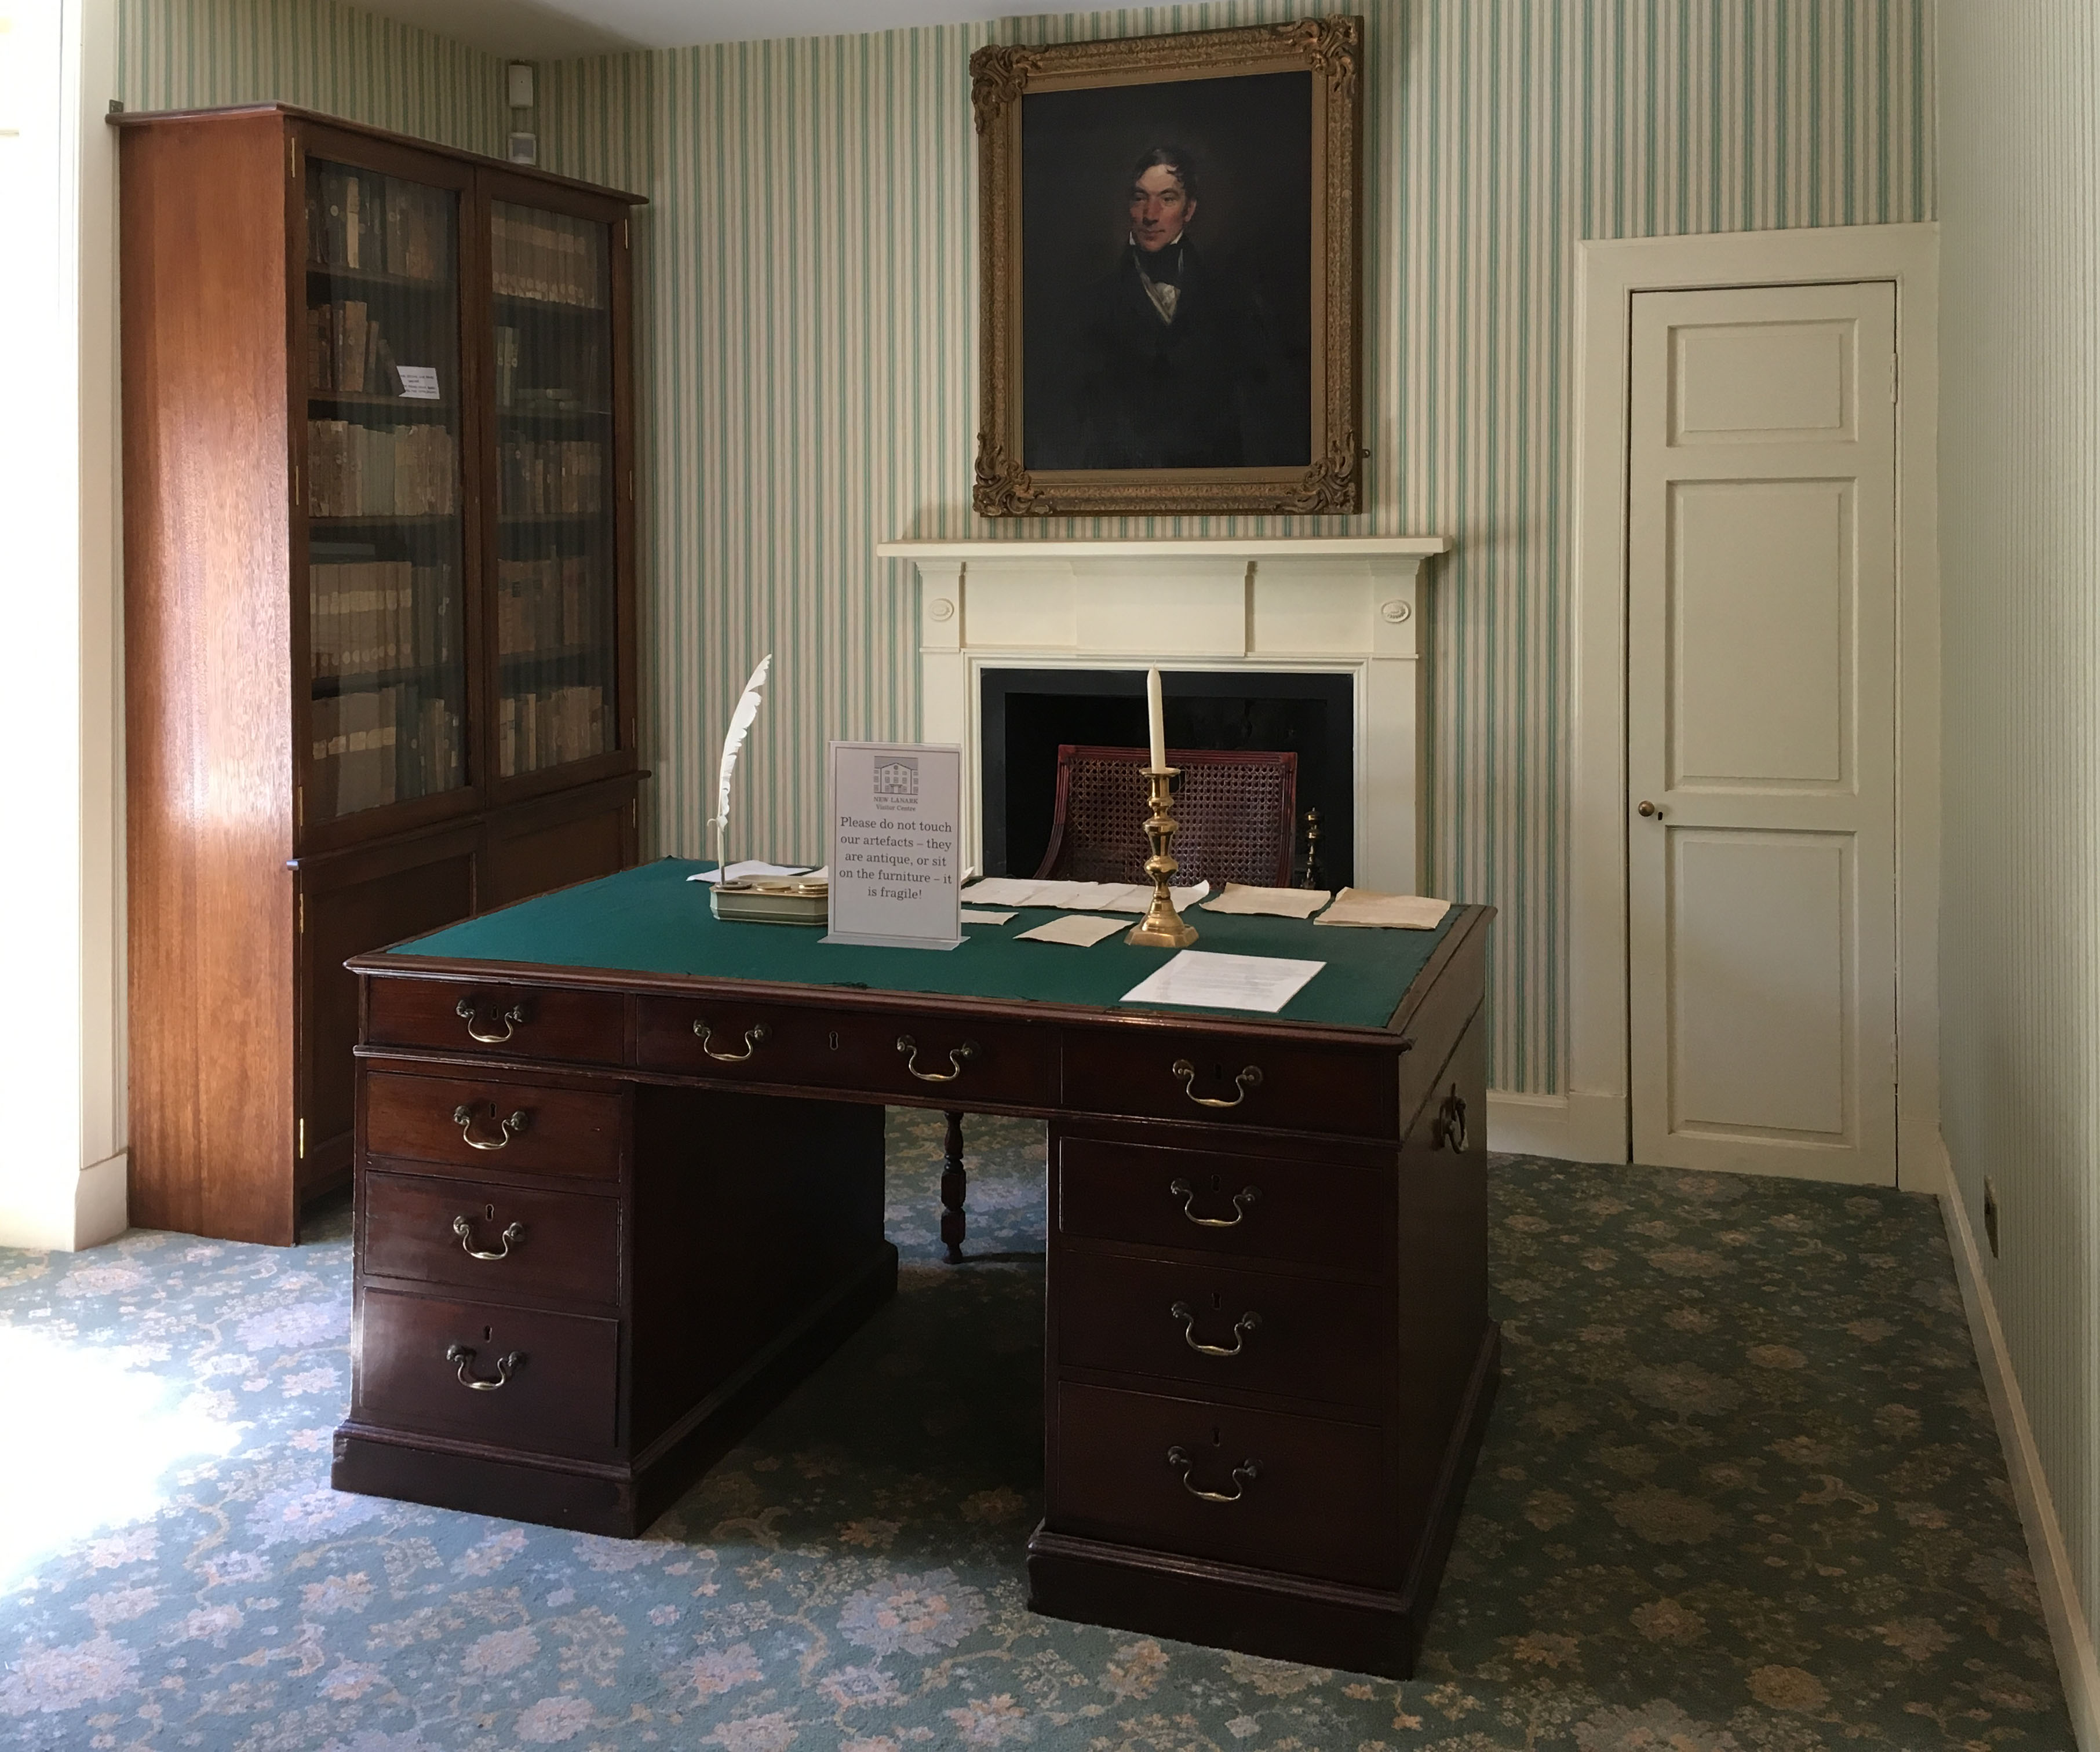 Robert Owen's office at New Lanark, photograph by Ritsert Rinsma